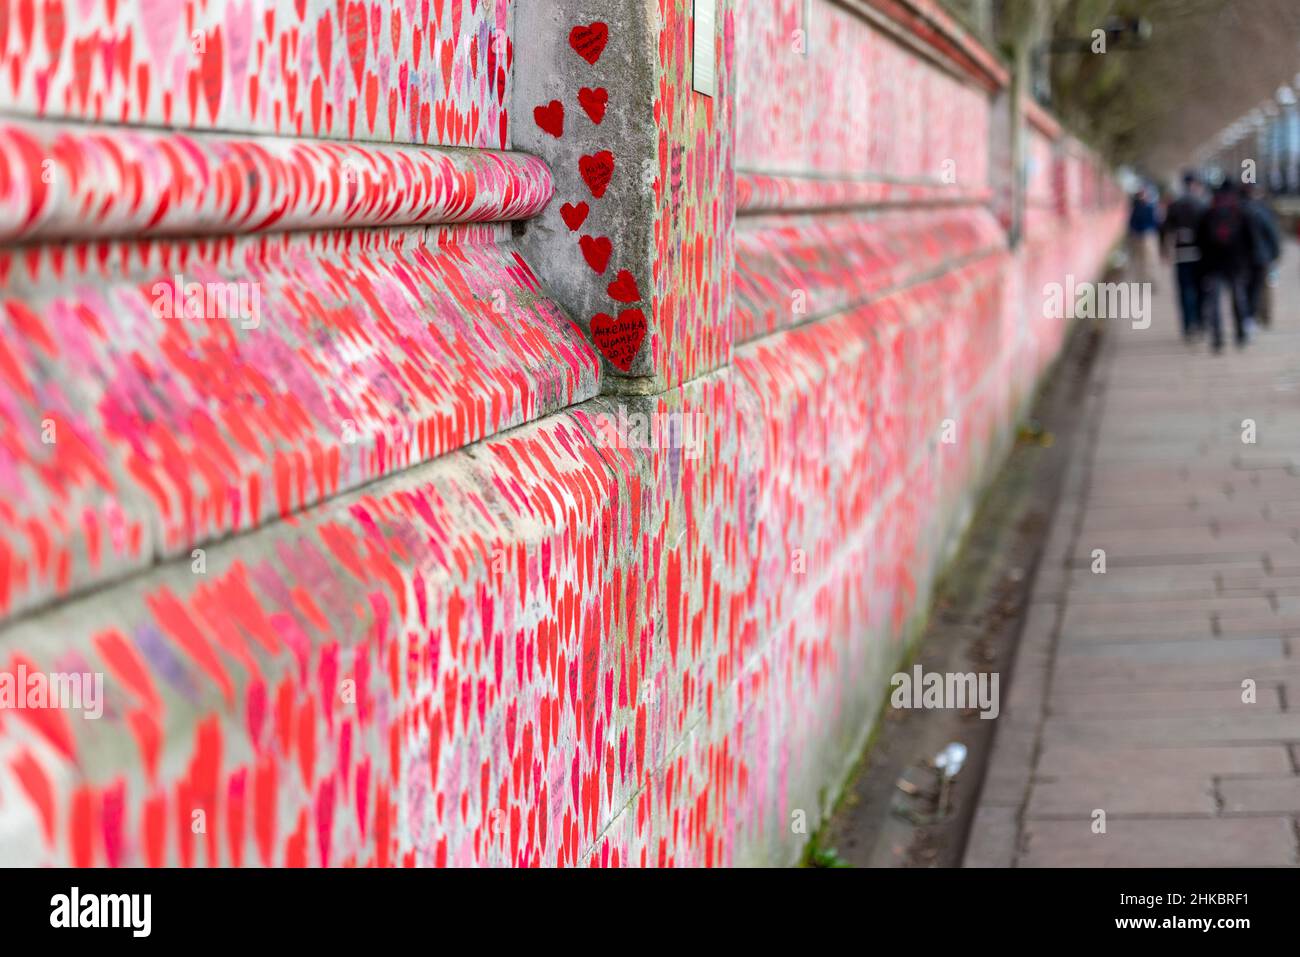 National Covid Memorial Wall in una giornata di grande tristini a Lambeth, Londra, Regno Unito. Cuori rossi disegnati su un muro che rappresenta ogni morte da COVID 19. Lunghezza Foto Stock